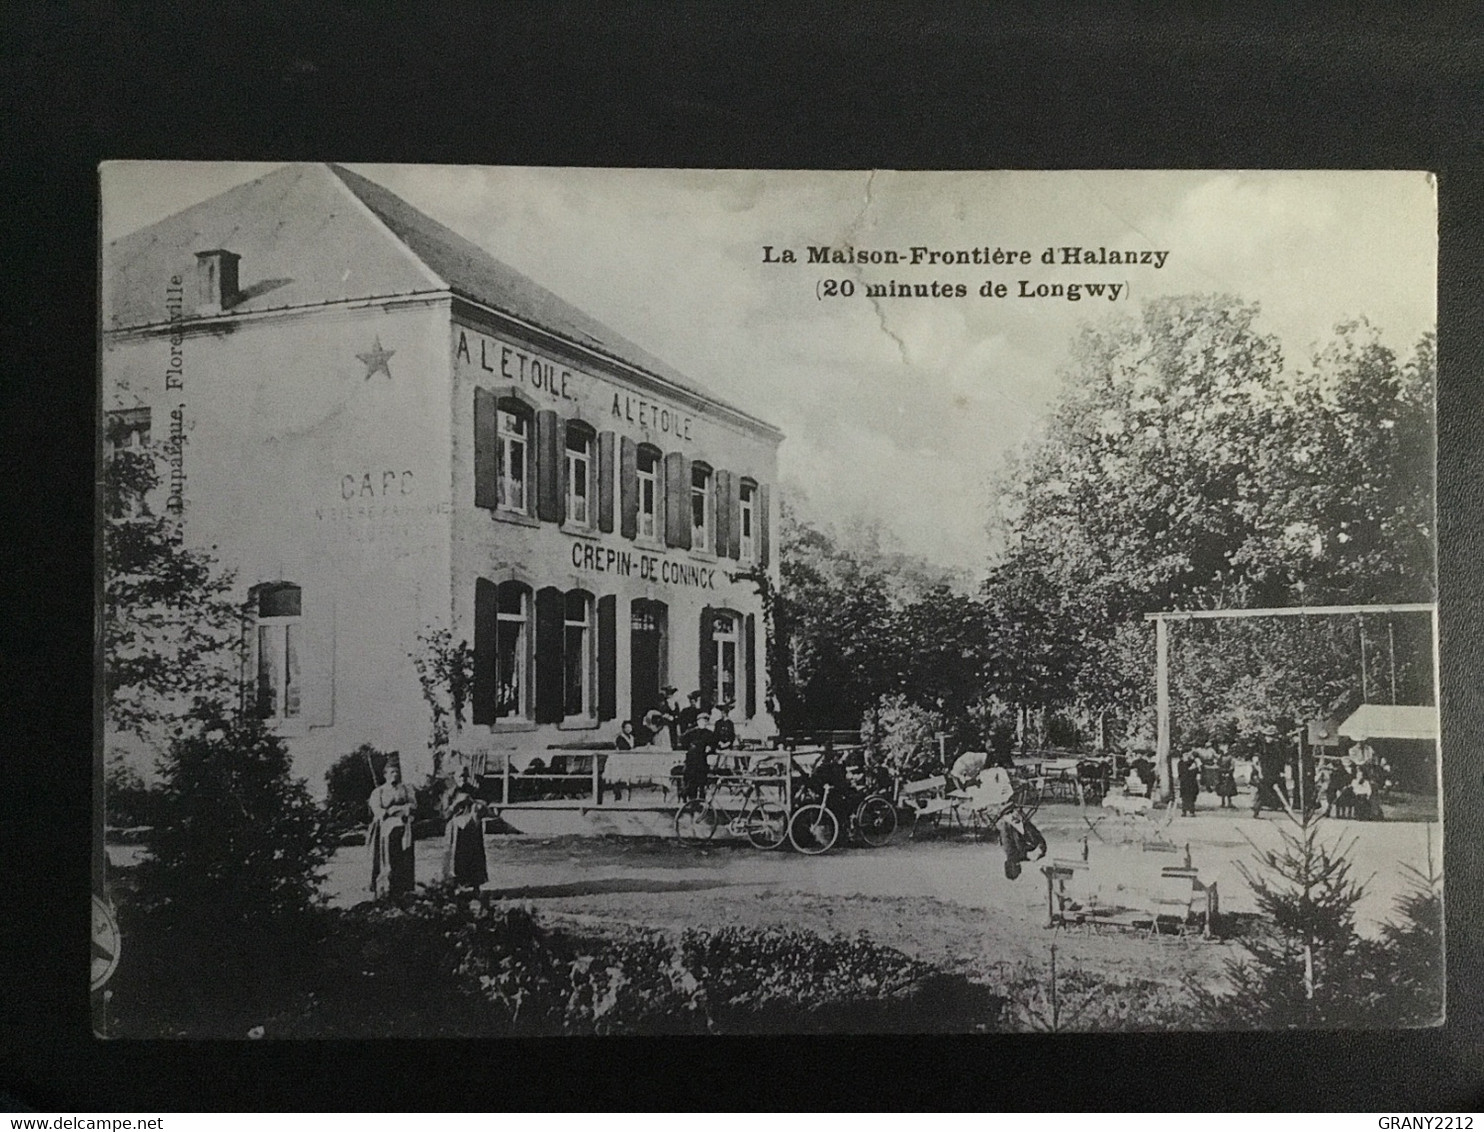 LA MAISON - FRONTIERE D’HALANZY »20 MINUTES DE LONGWUY 1907 »HÔTEL A L’ÉTOILE CRÉPIN - DE - CONINCK - Aubange